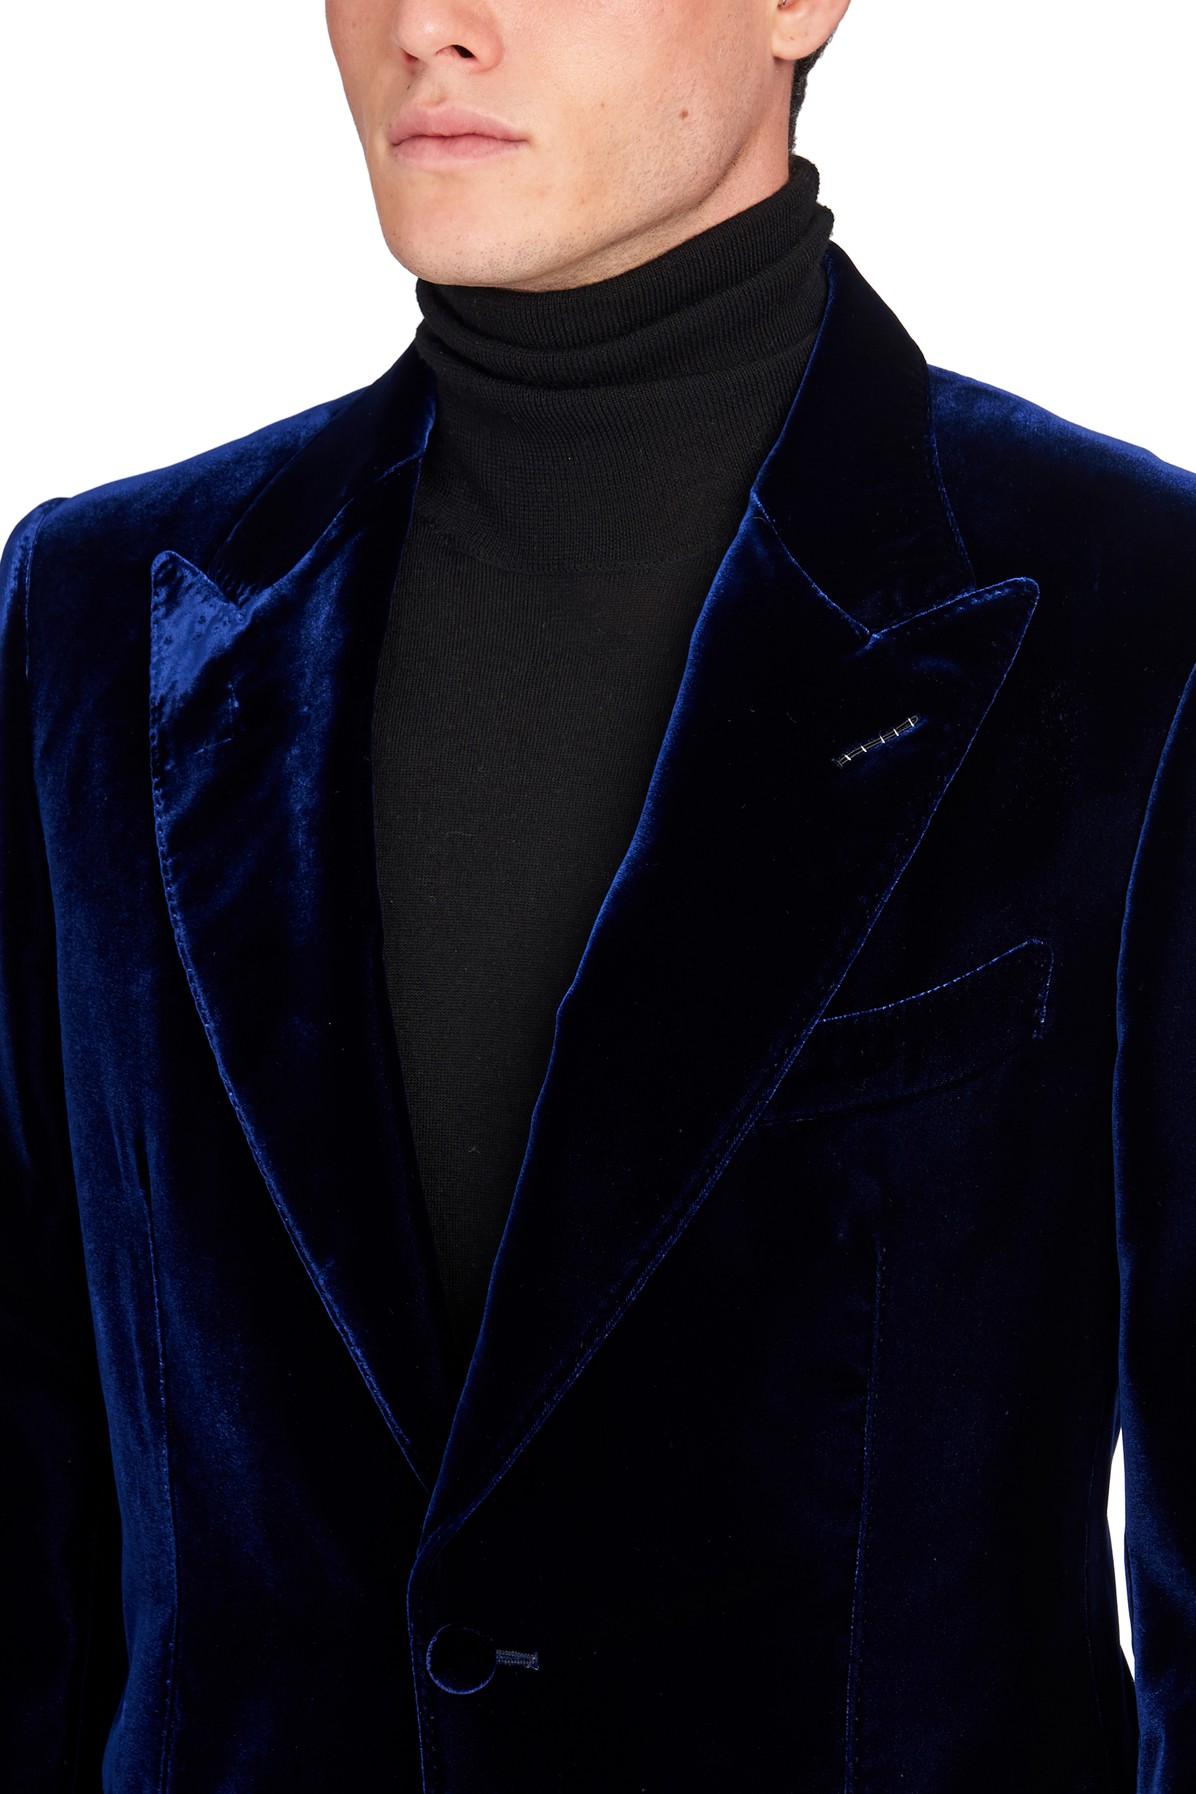 Tom Ford Velvet Jacket in Dark_navy (Blue) for Men - Lyst